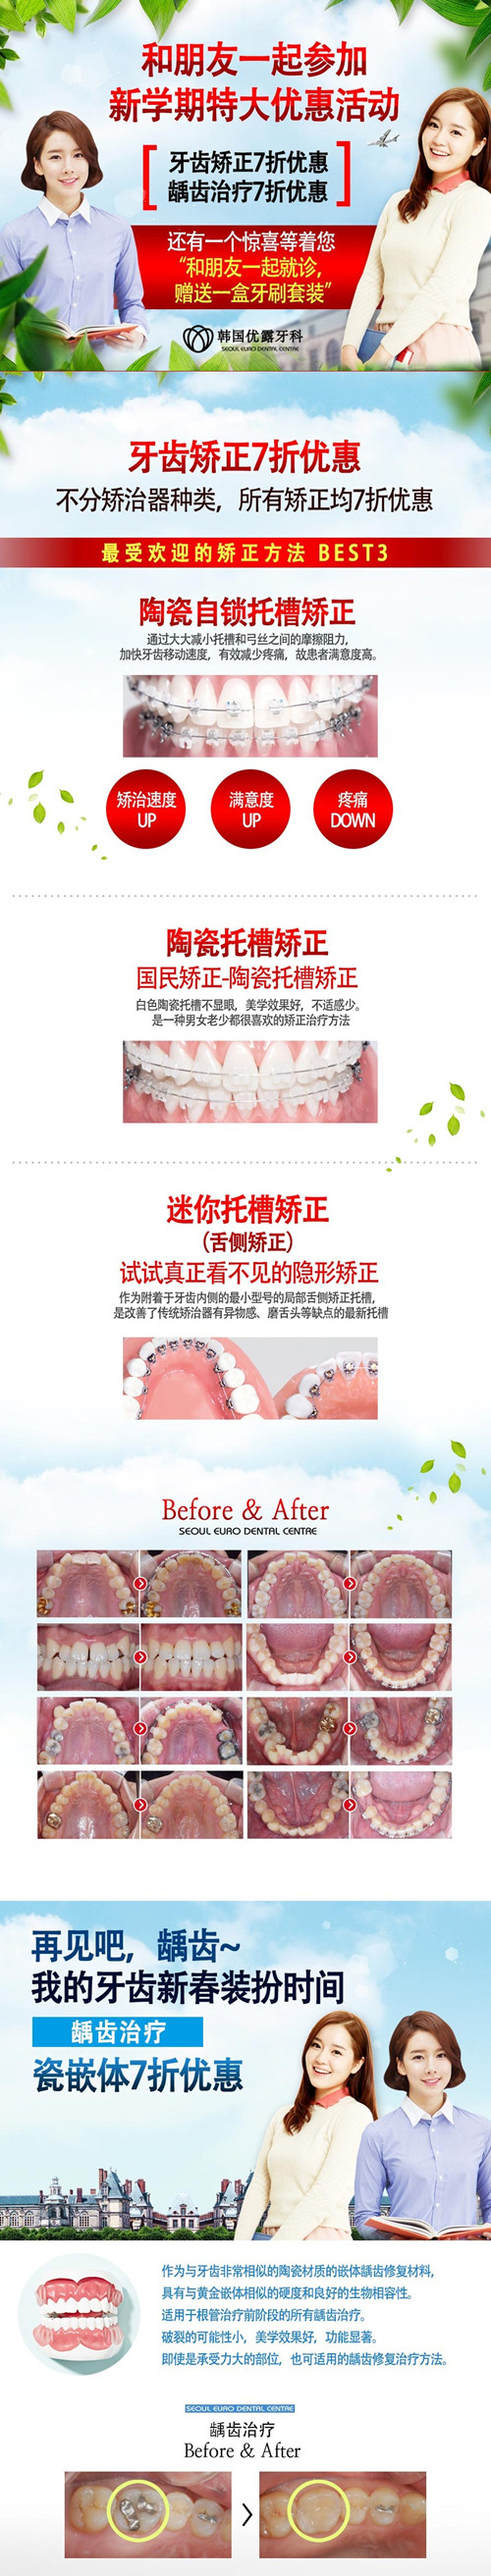 韩国优露整形外科牙齿矫正优惠活动